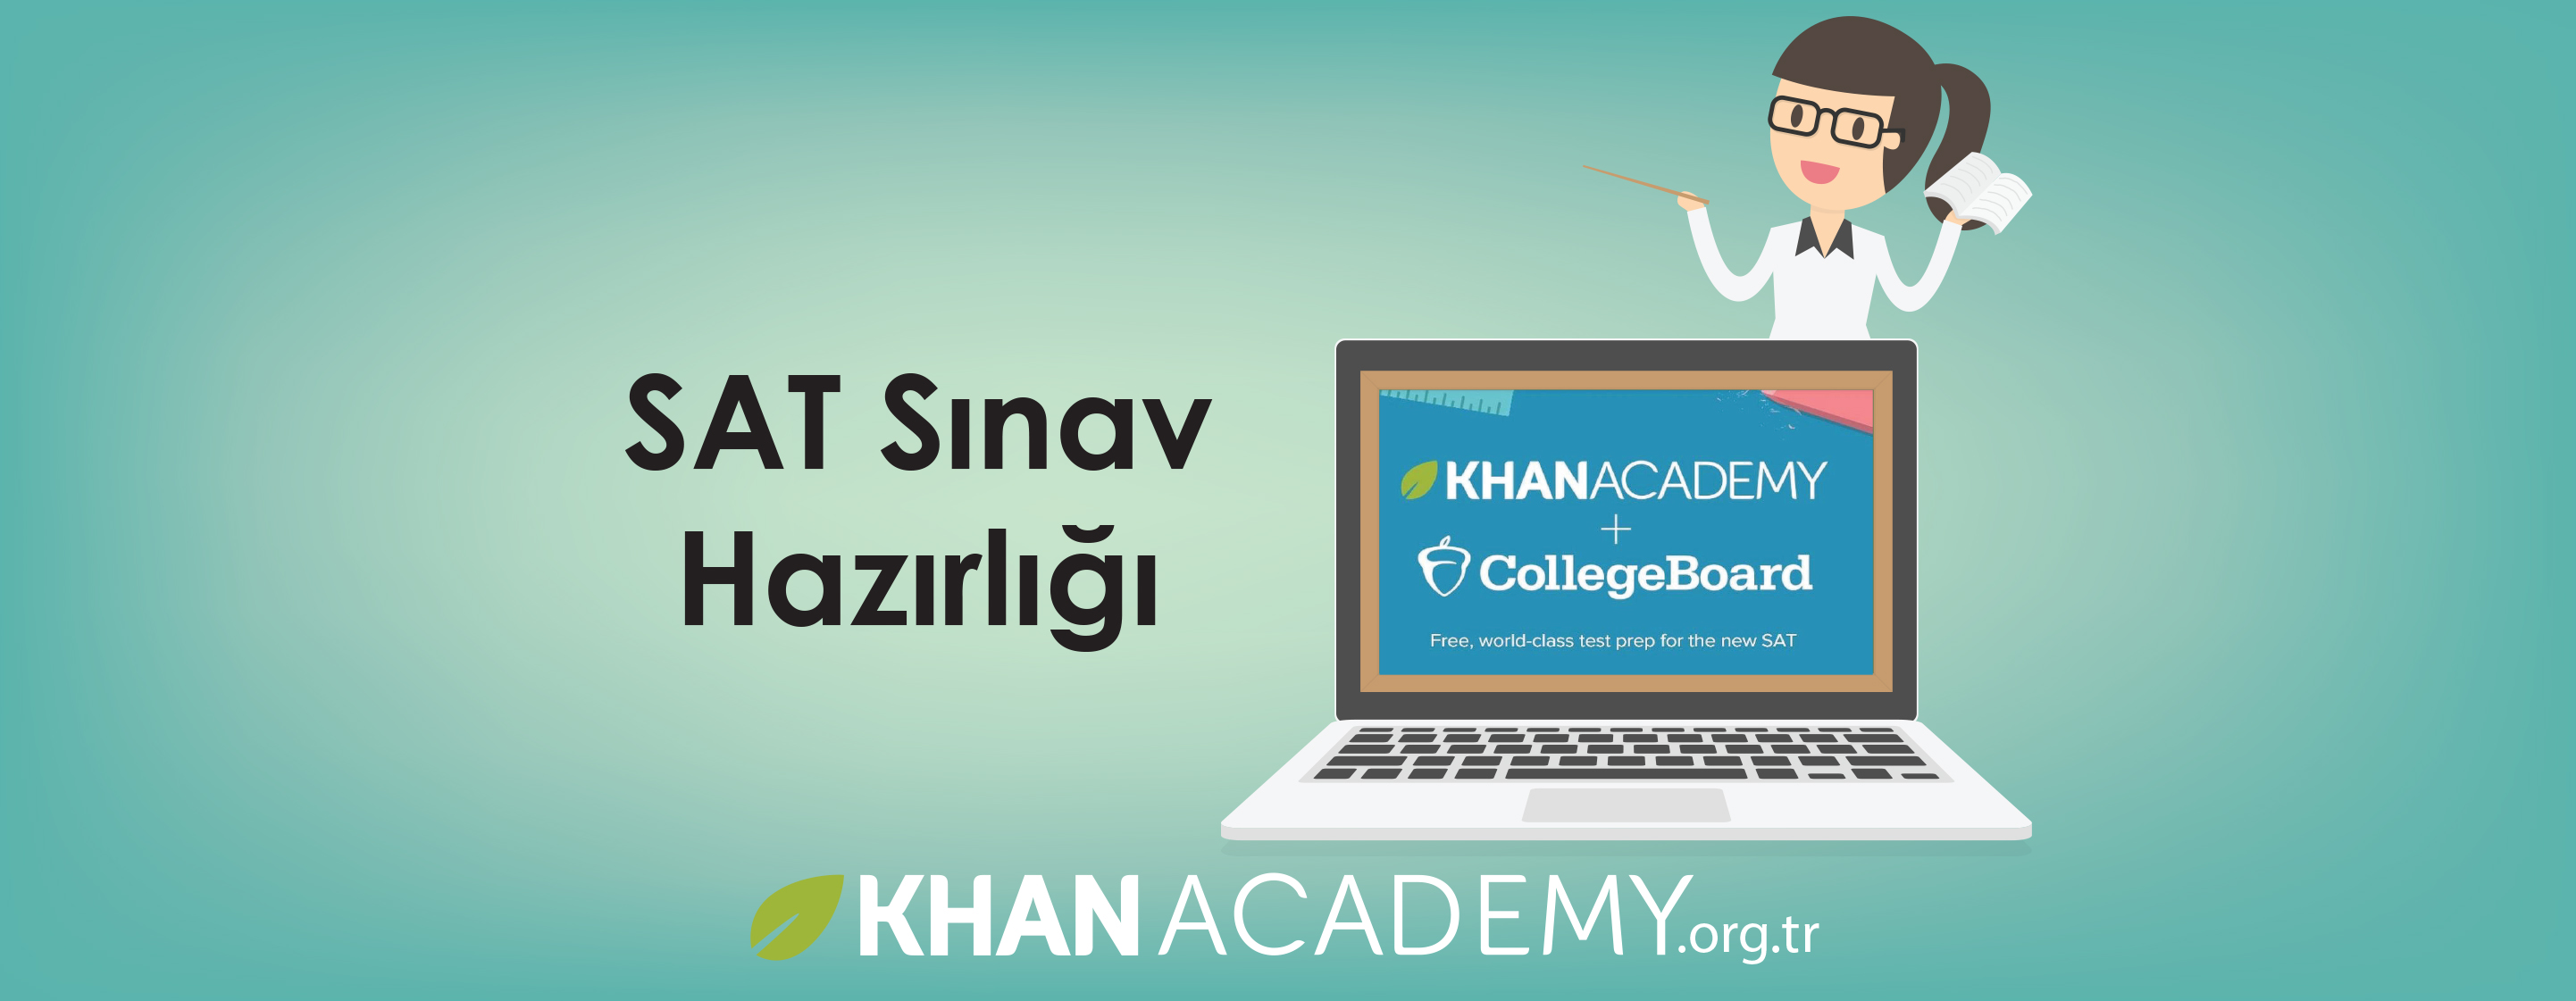 SAT Sınavına mı hazırlanıyorsunuz? Khan Academy SAT Sınavı'nın resmi hazırlık kaynağıdır!